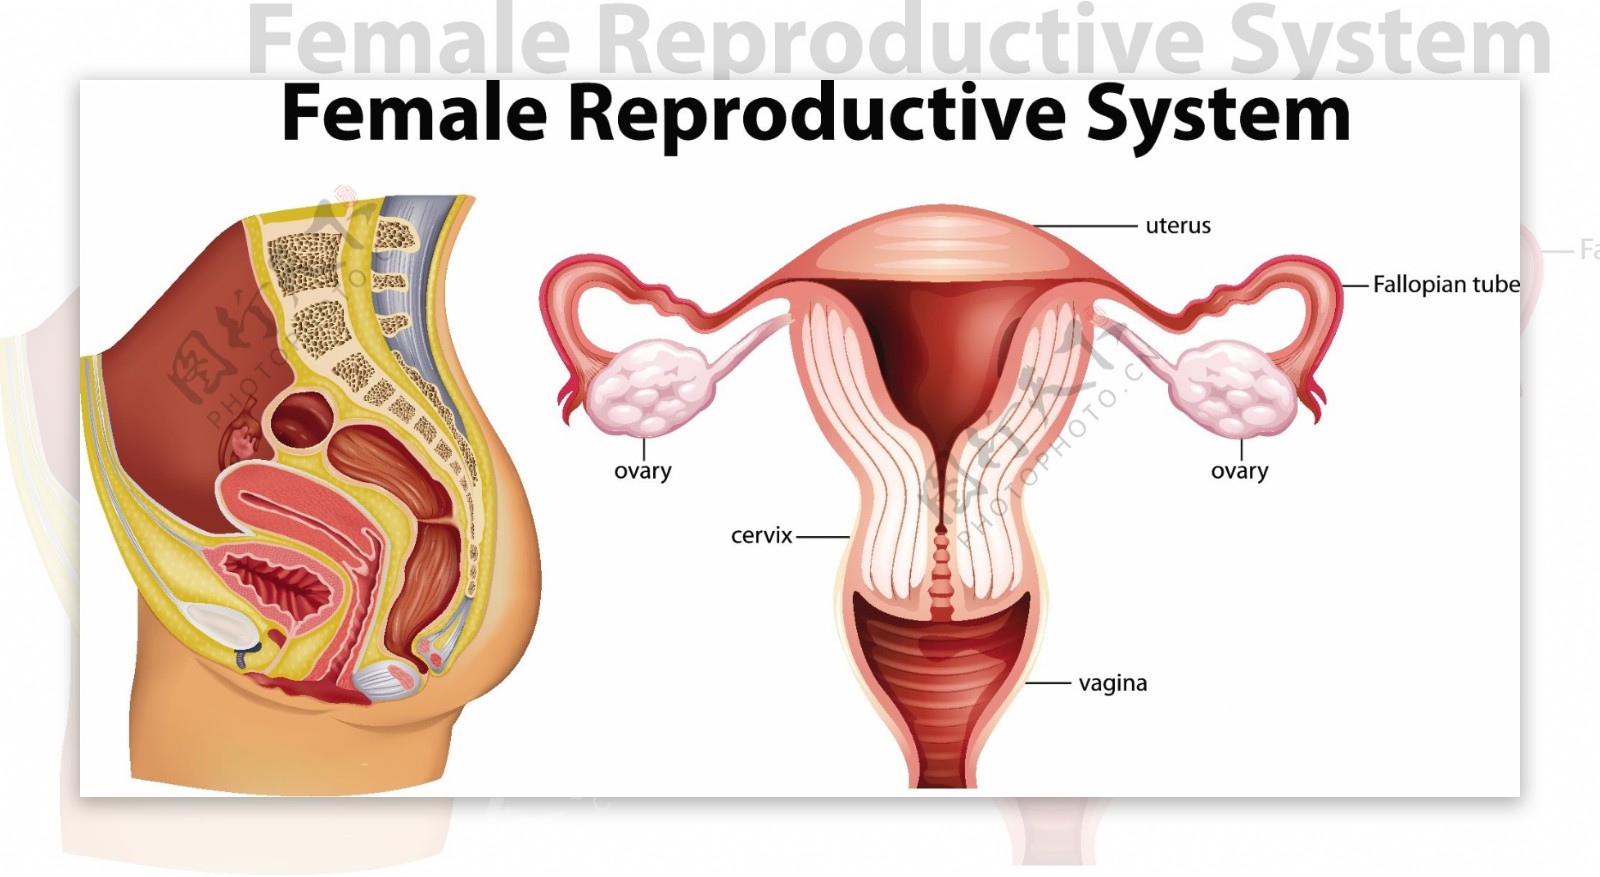 图示女性生殖系统图解